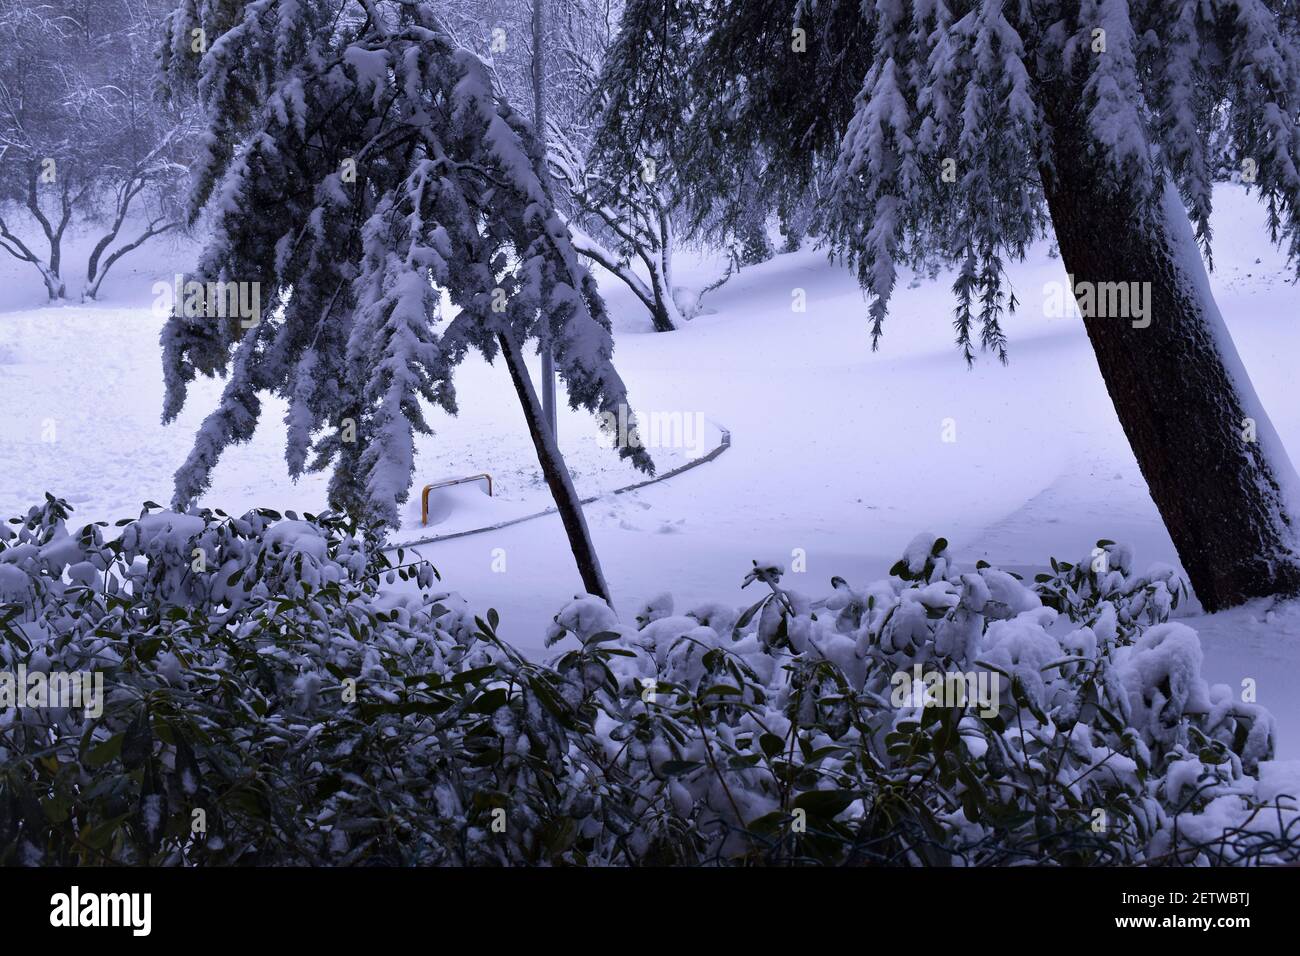 Neige dans le parc. Parc couvert de neige dans la chute de neige inhabituelle et grande de Madrid alors que la tempête de neige Filomena passait par l'Espagne Banque D'Images